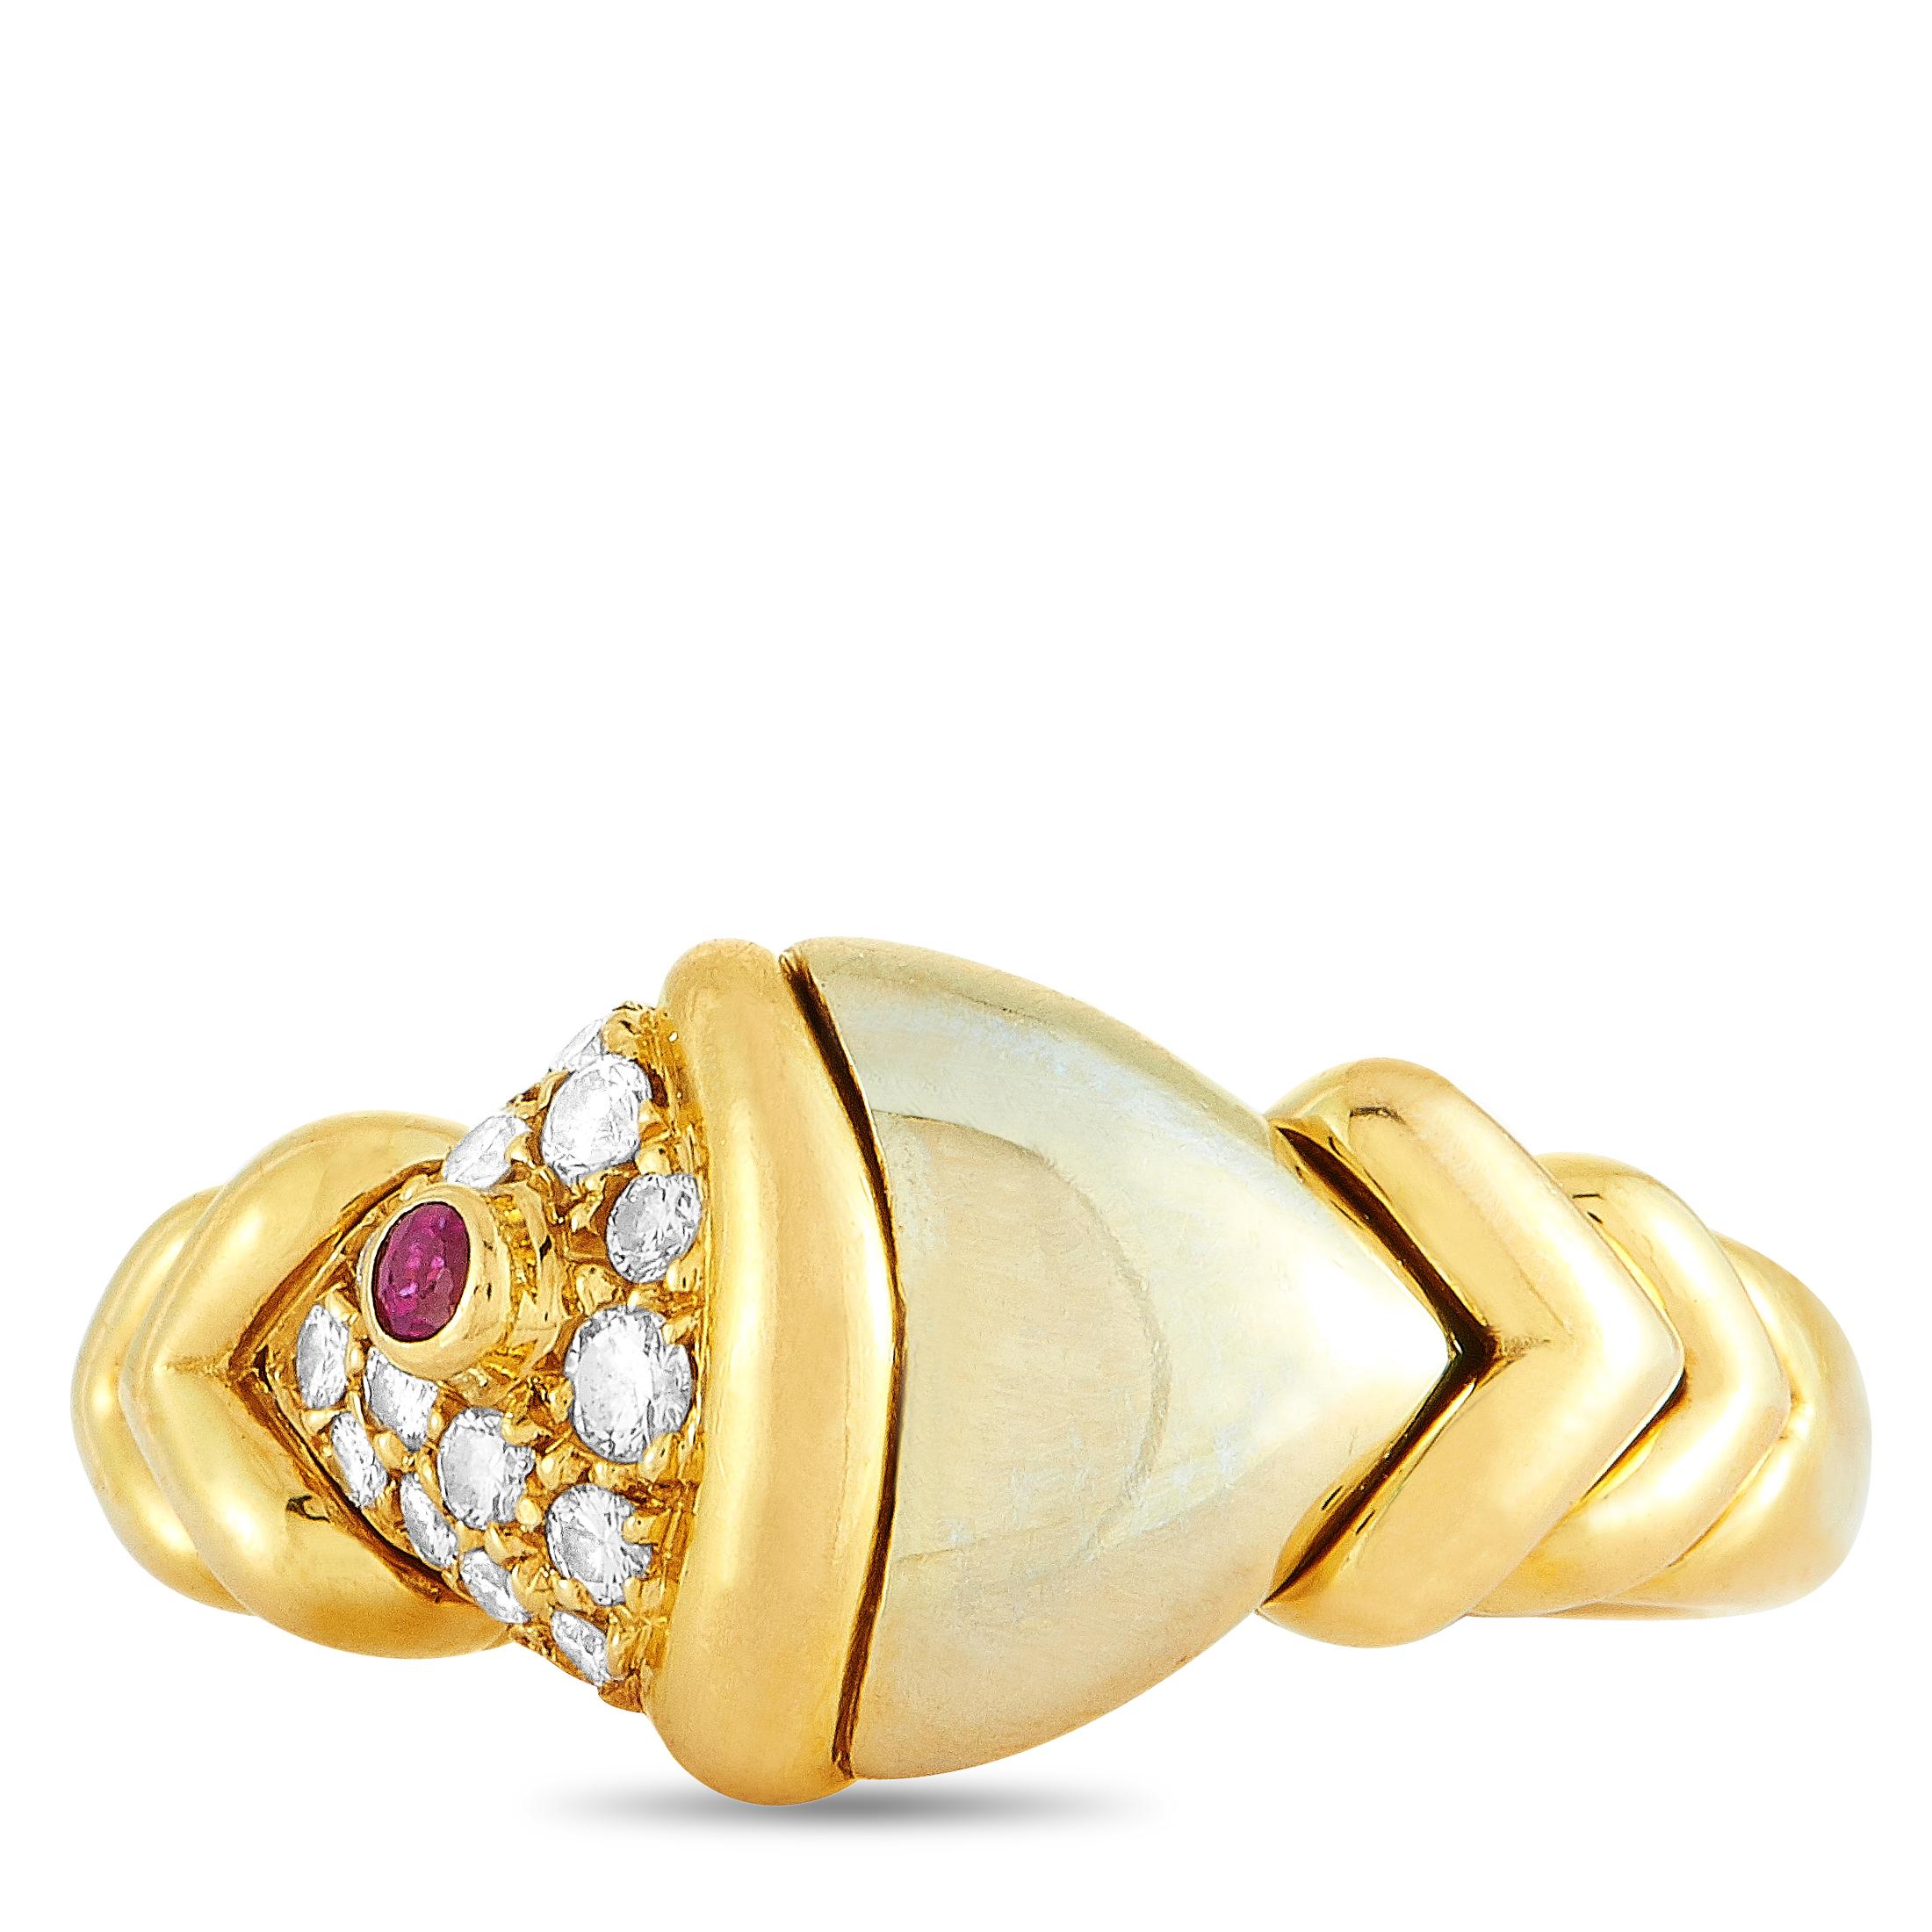 Bvlgari Yellow and White Gold Diamond and Ruby Ring 2